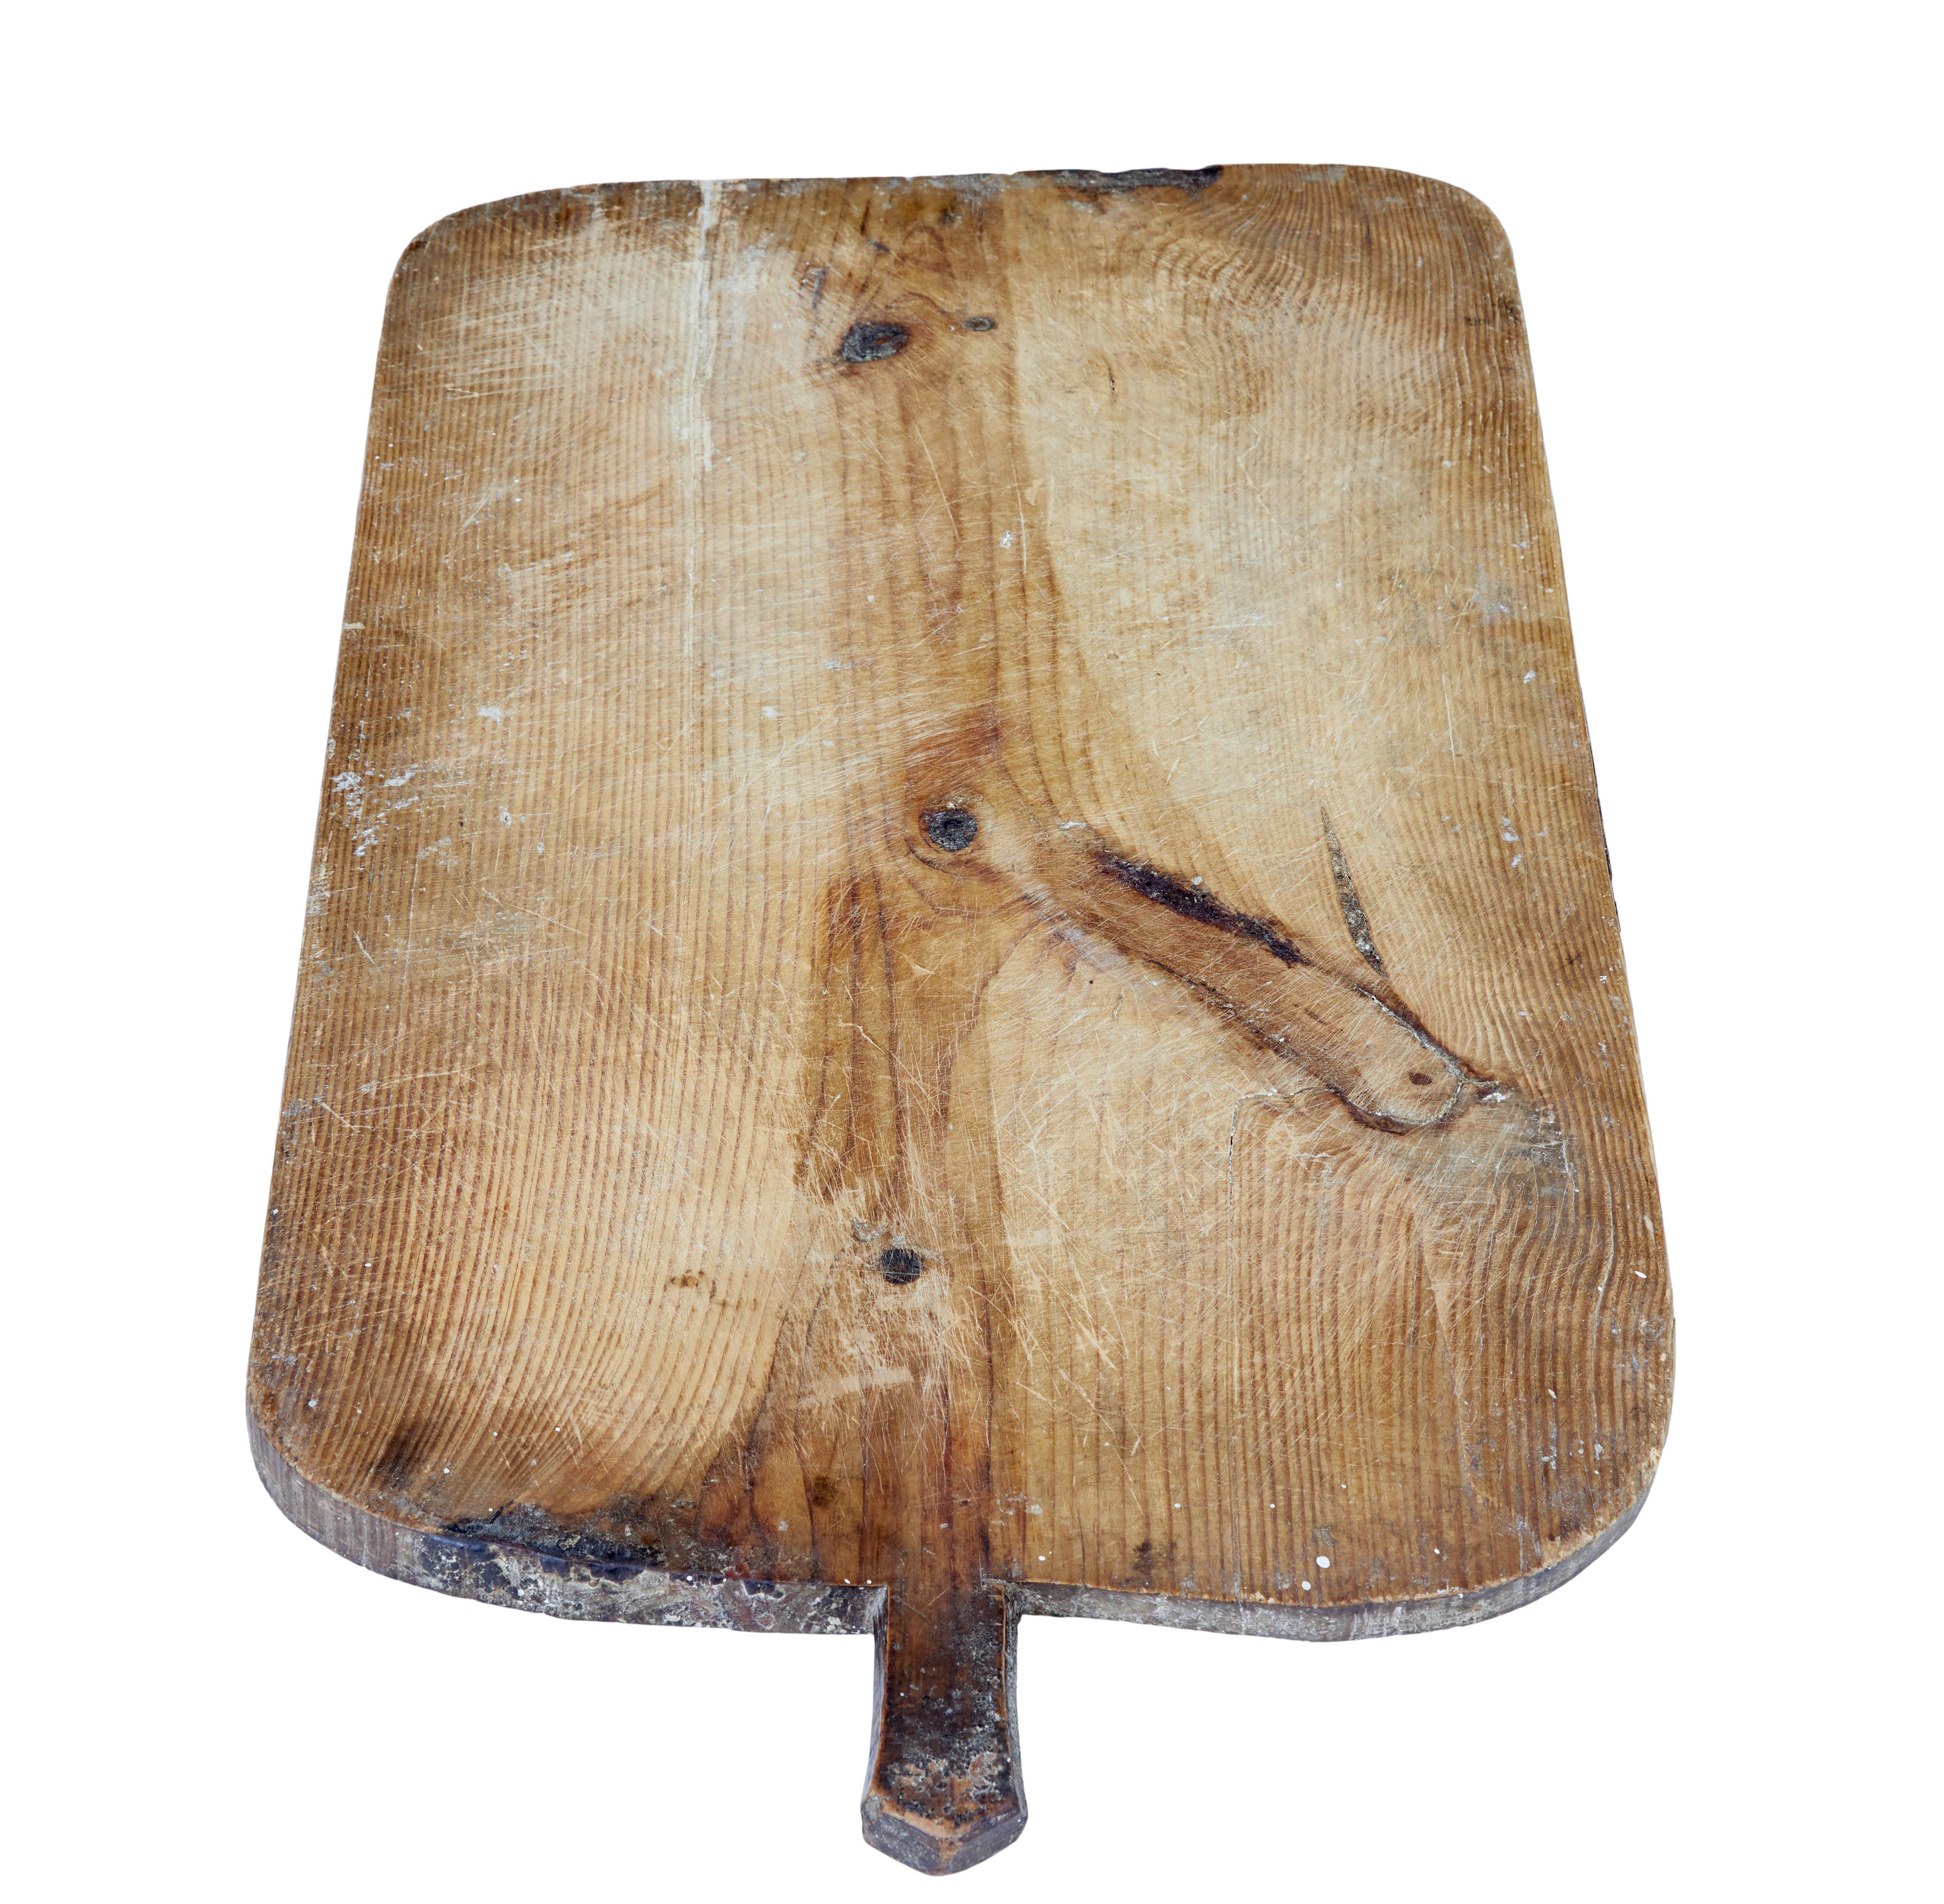 Planche à pain suédoise du 19e siècle en pin, vers 1890.

Pièce de cuisine rustique de bonne qualité provenant de Suède qui a conservé une partie de sa patine d'origine.

Parfait pour être exposé ou pour être utilisé sur la table.

Marques de